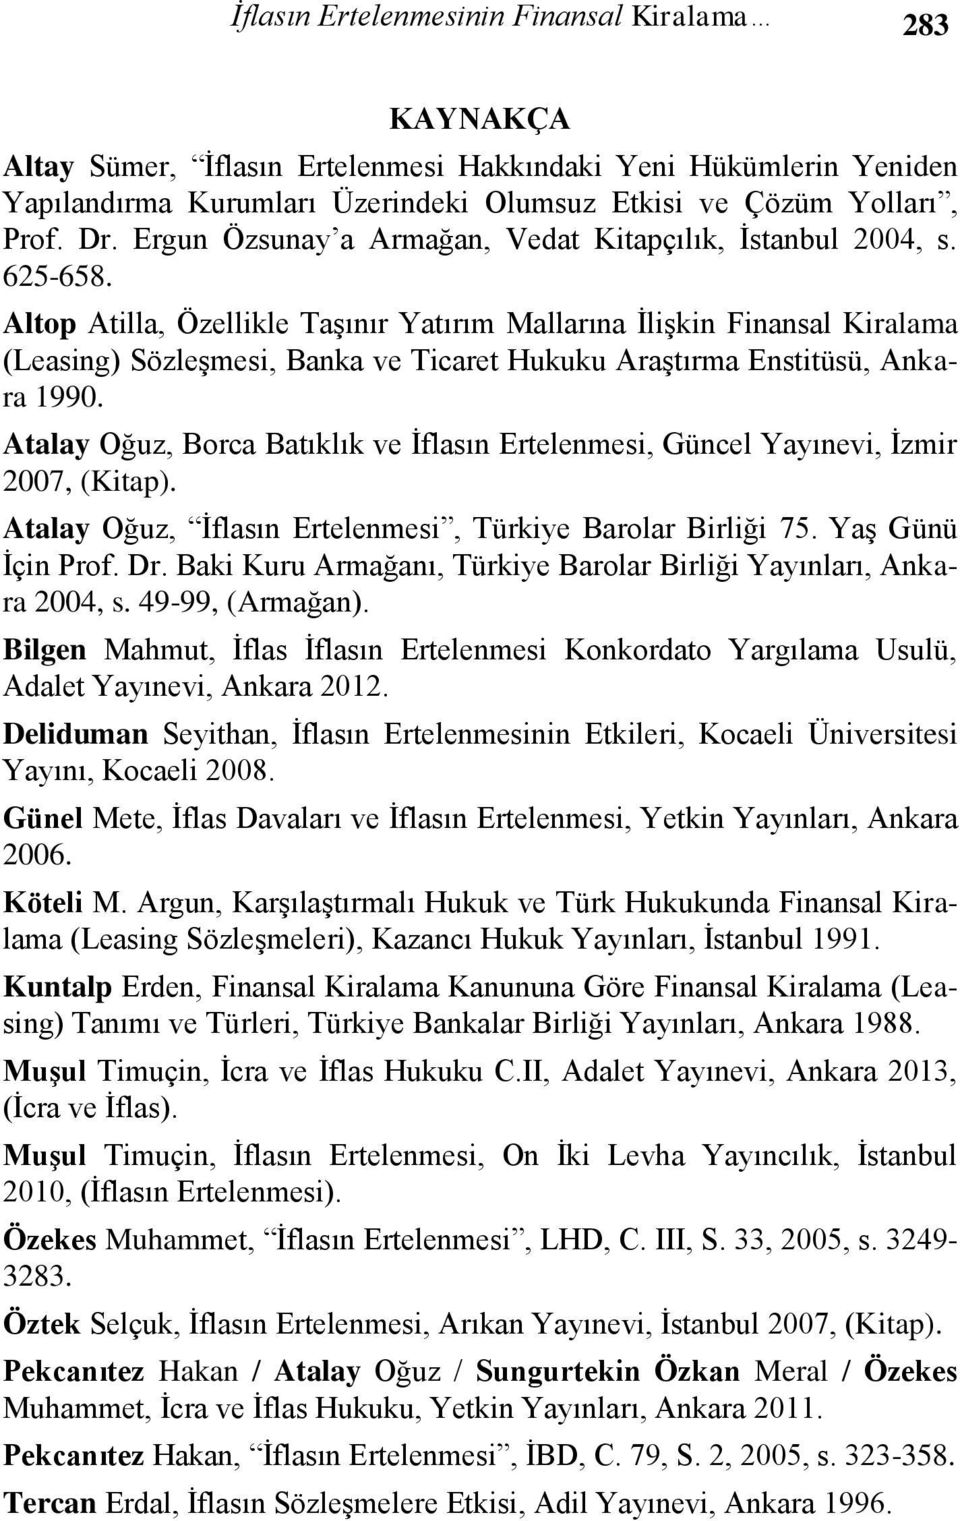 Altop Atilla, Özellikle Taşınır Yatırım Mallarına İlişkin Finansal Kiralama (Leasing) Sözleşmesi, Banka ve Ticaret Hukuku Araştırma Enstitüsü, Ankara 1990.